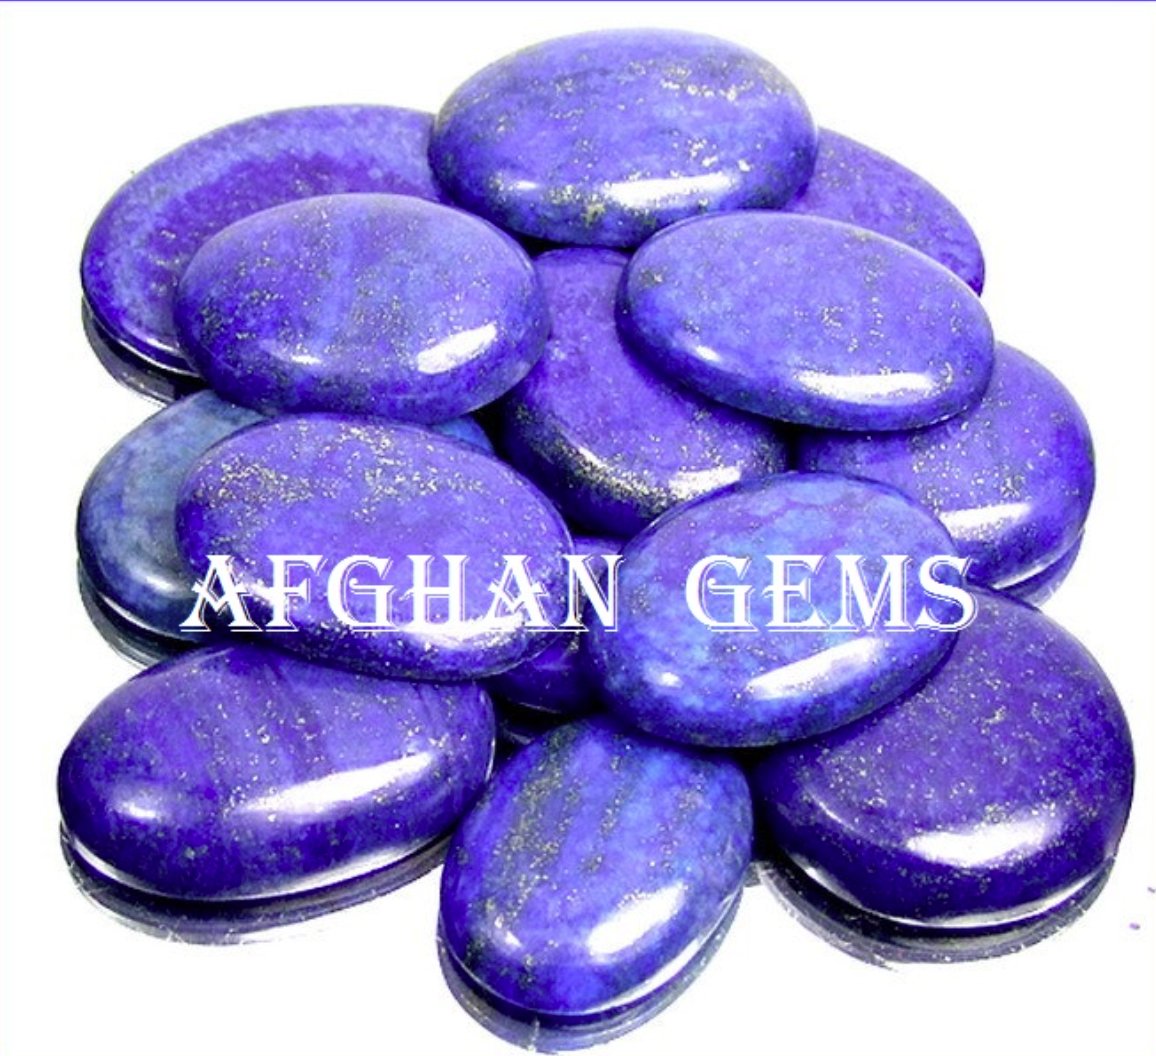 Afghan Gems - Ahmad Zadran